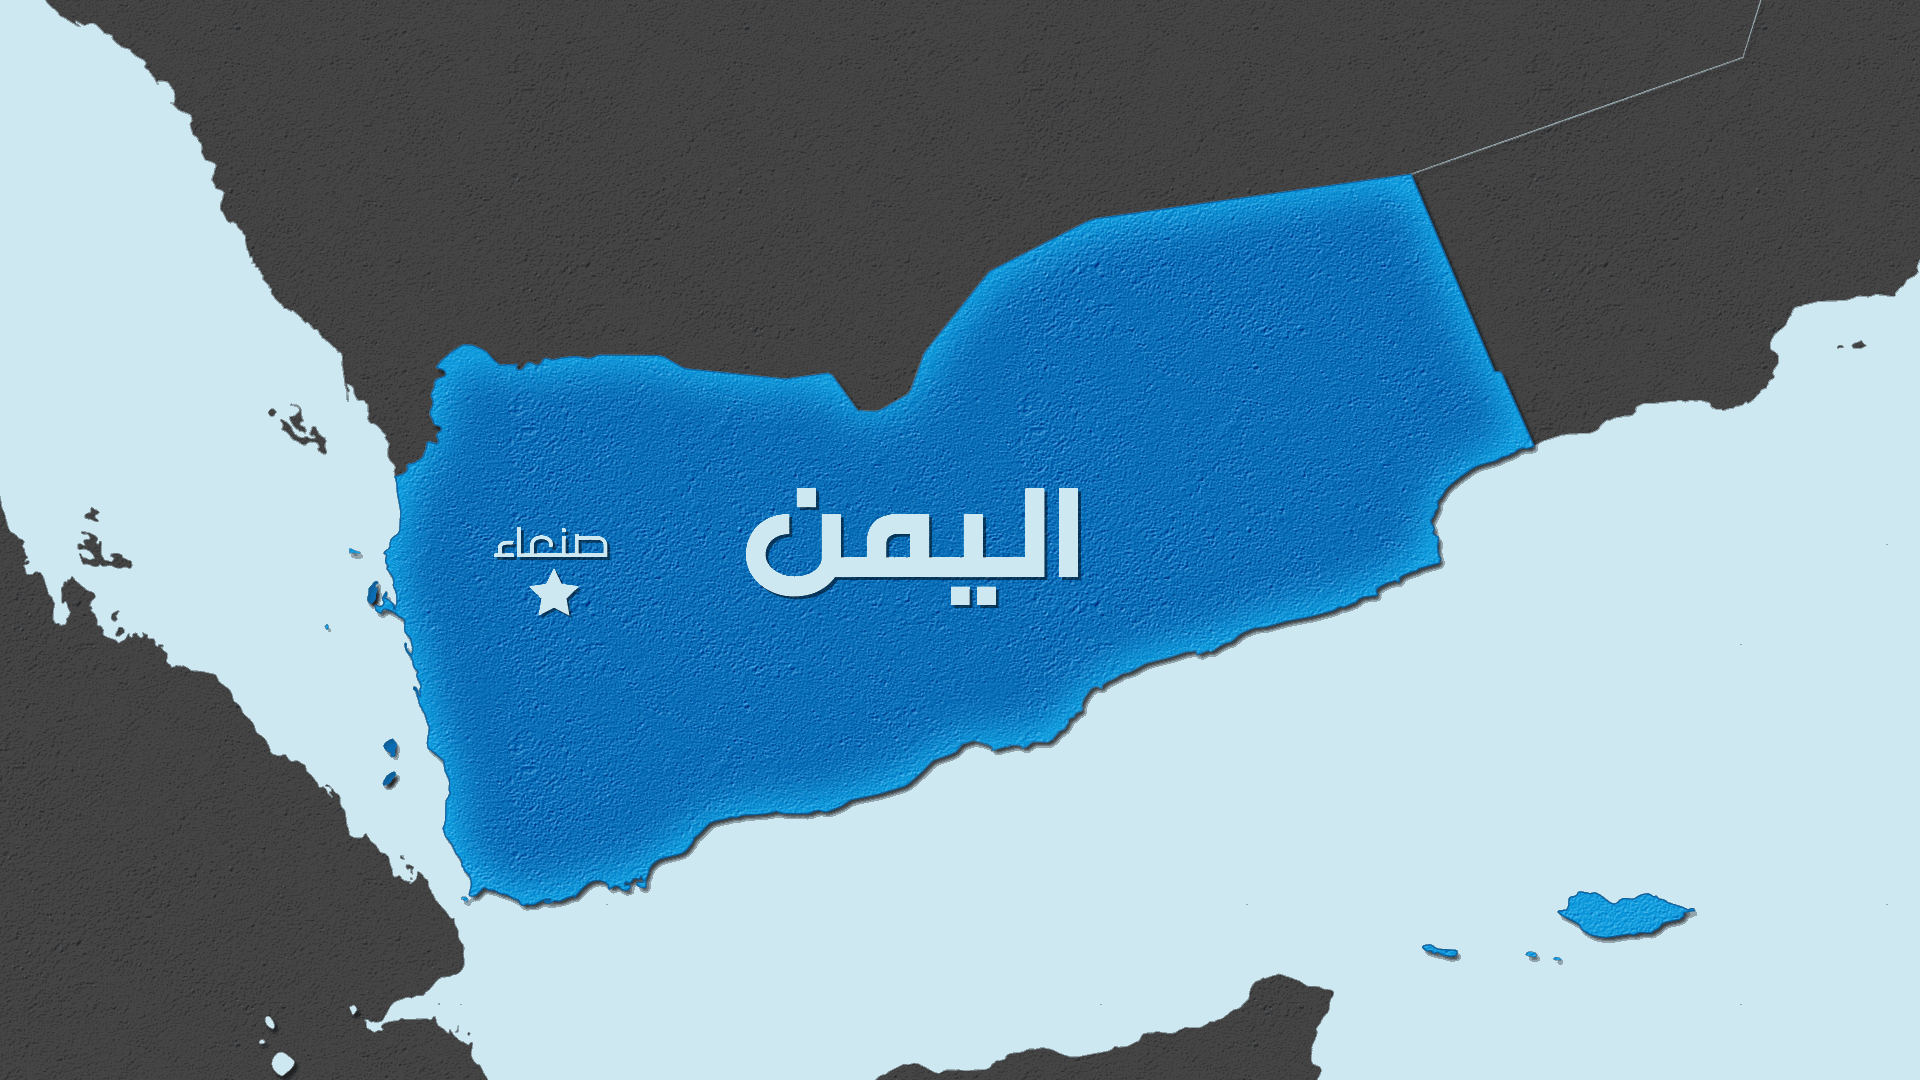 مقتل 6 جنود وإصابة 11 في هجوم بجنوب اليمن